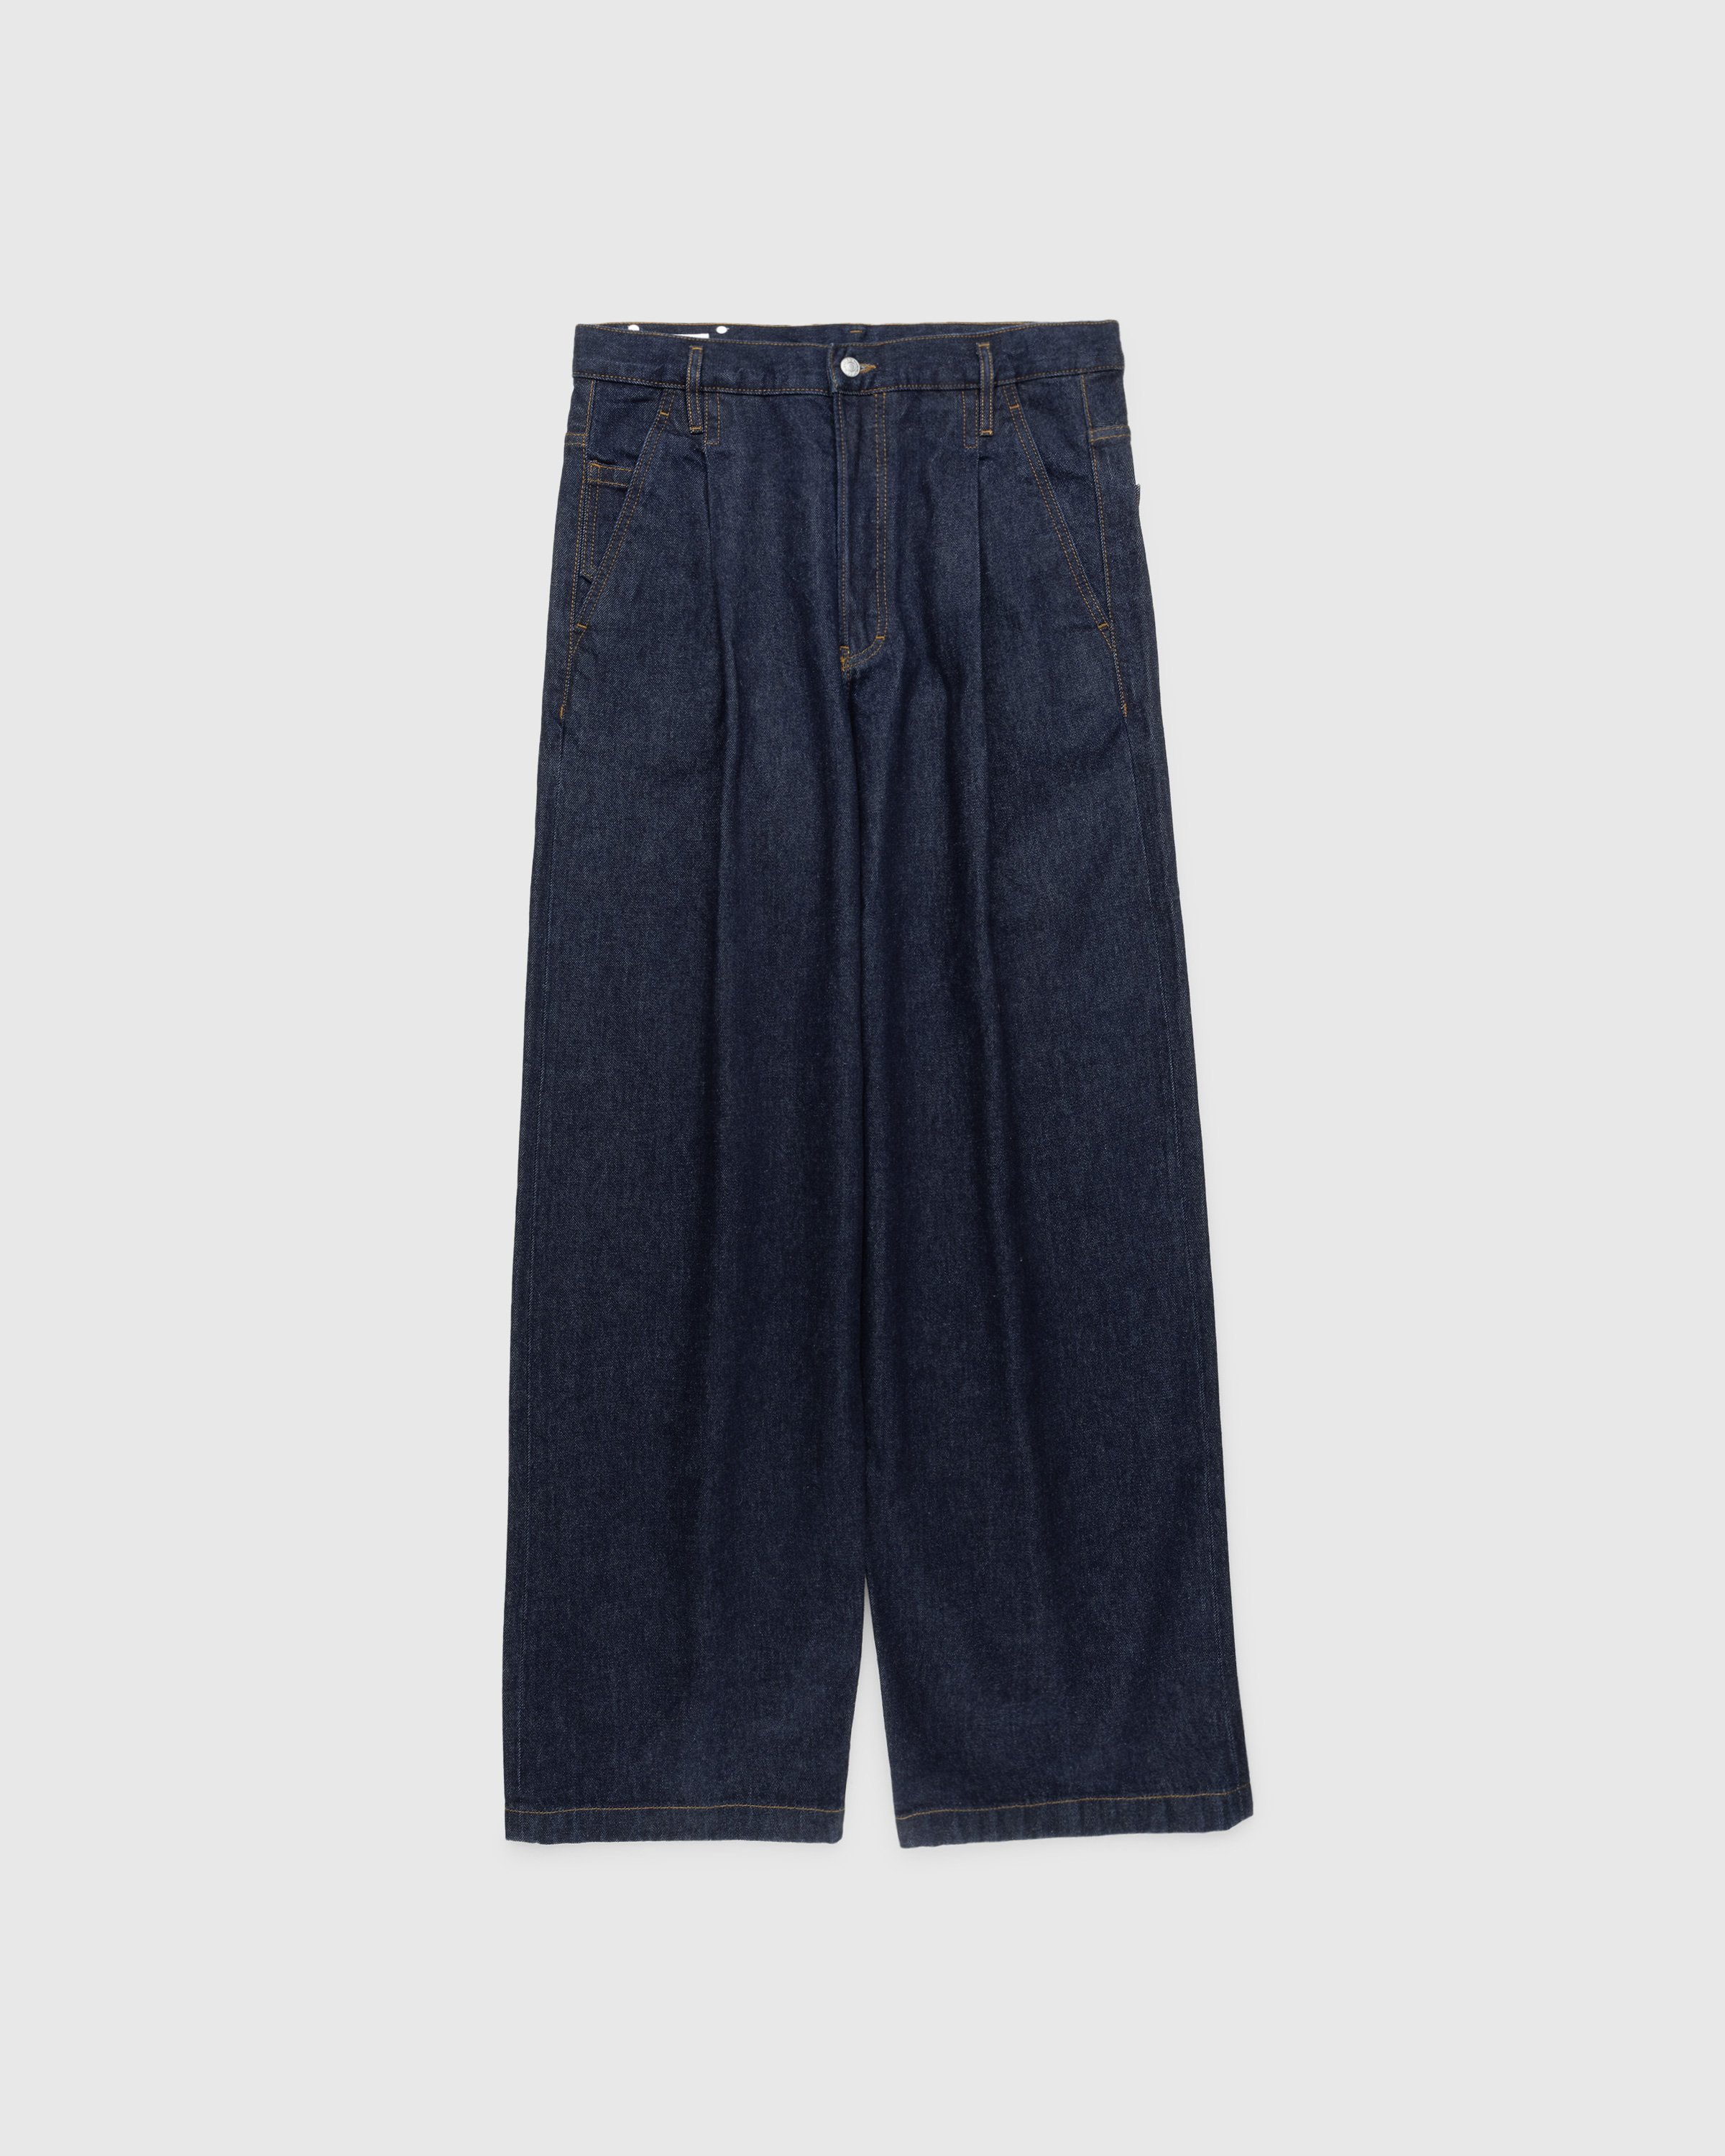 Dries van Noten - Penning Pants Indigo - Clothing - Blue - Image 1